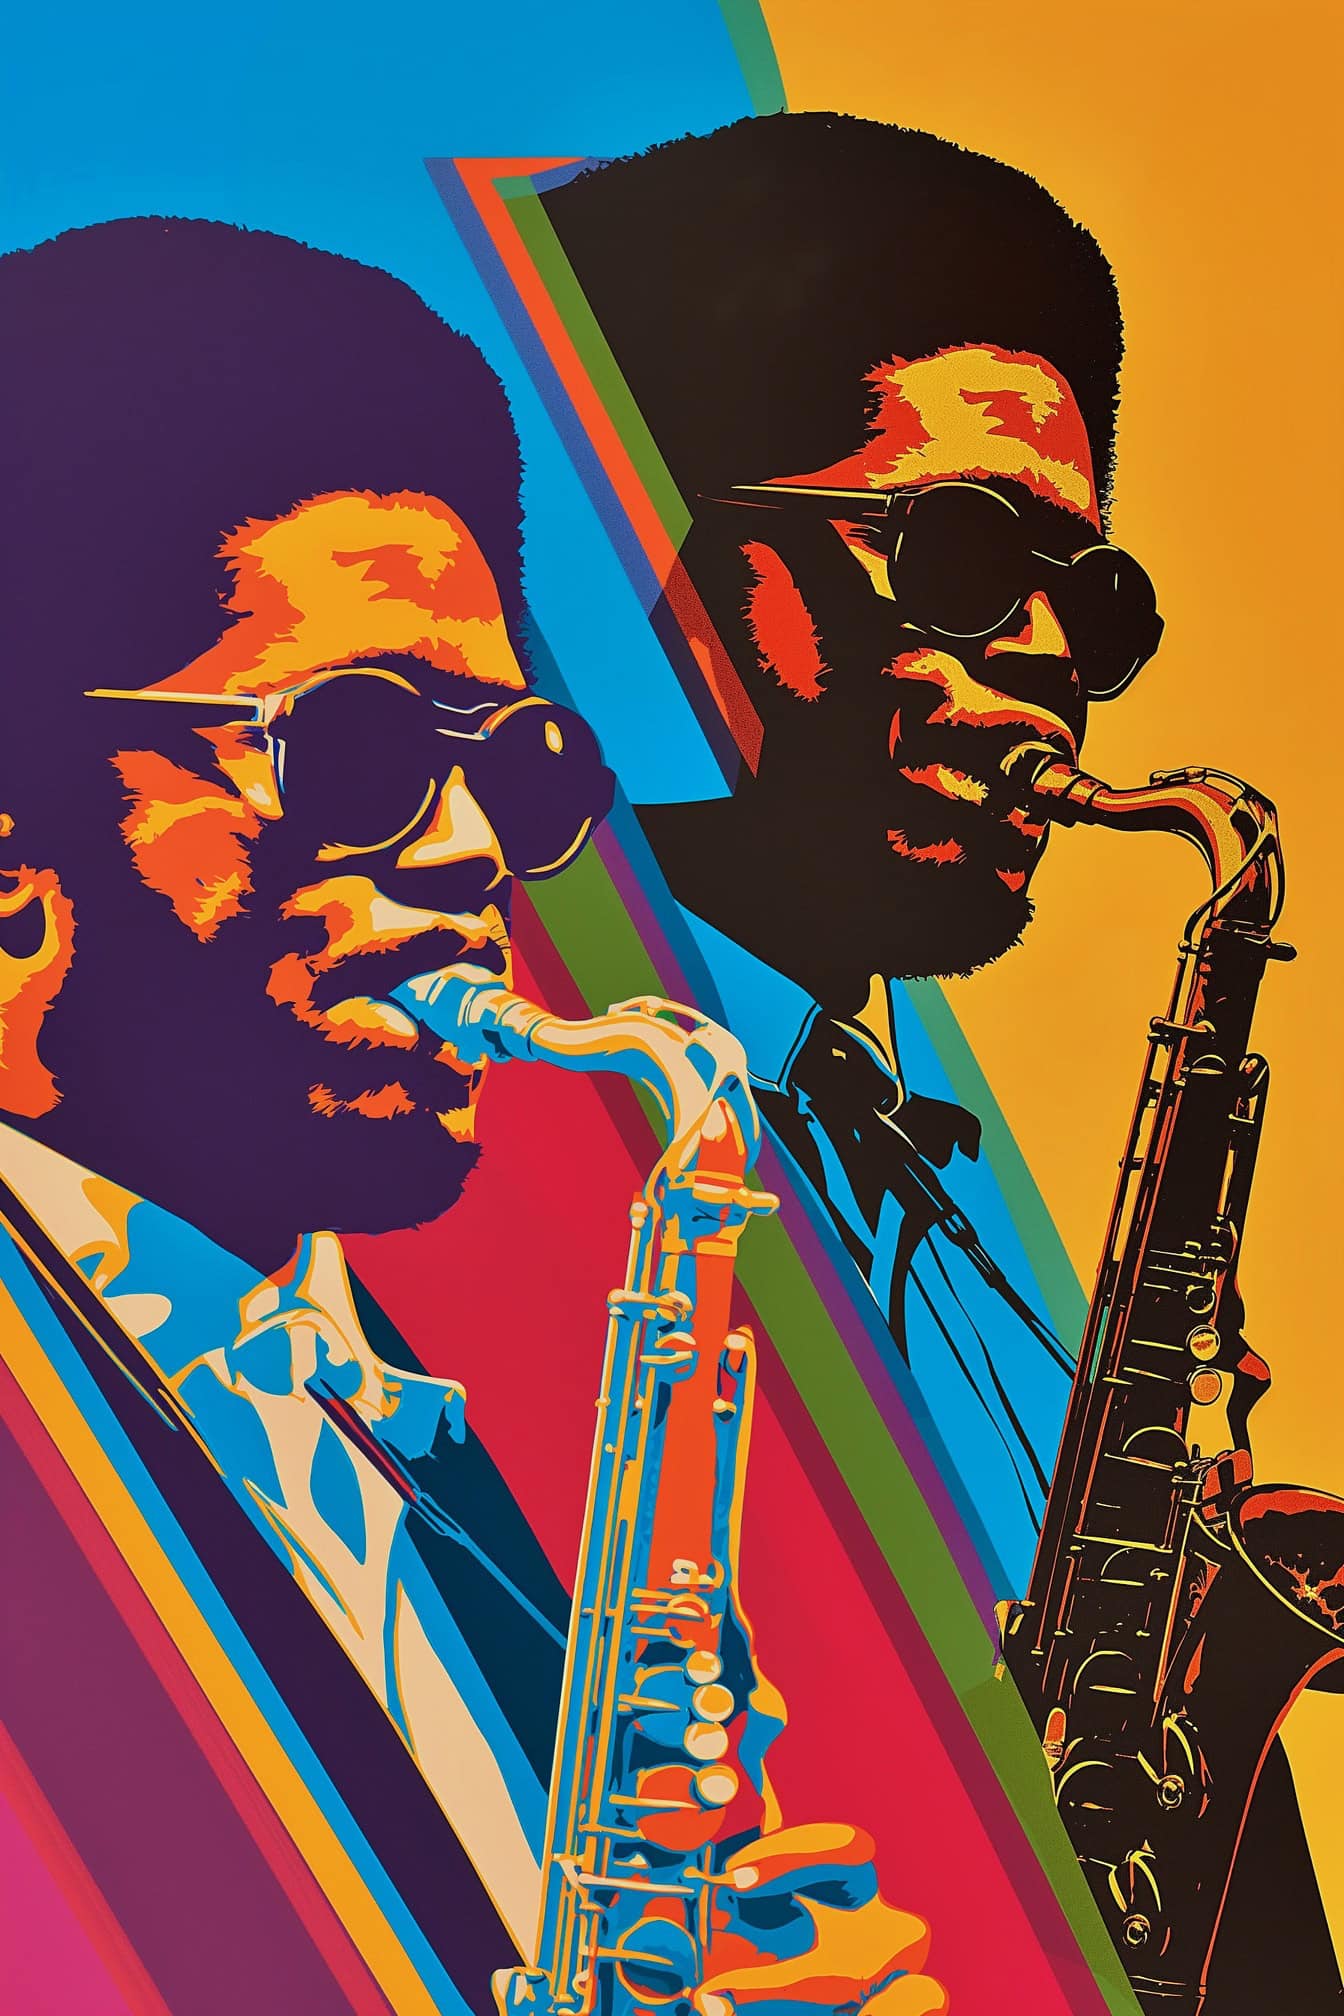 Áp phích theo phong cách retro thập niên 70 của một nhạc sĩ người Mỹ gốc Phi chơi saxophone